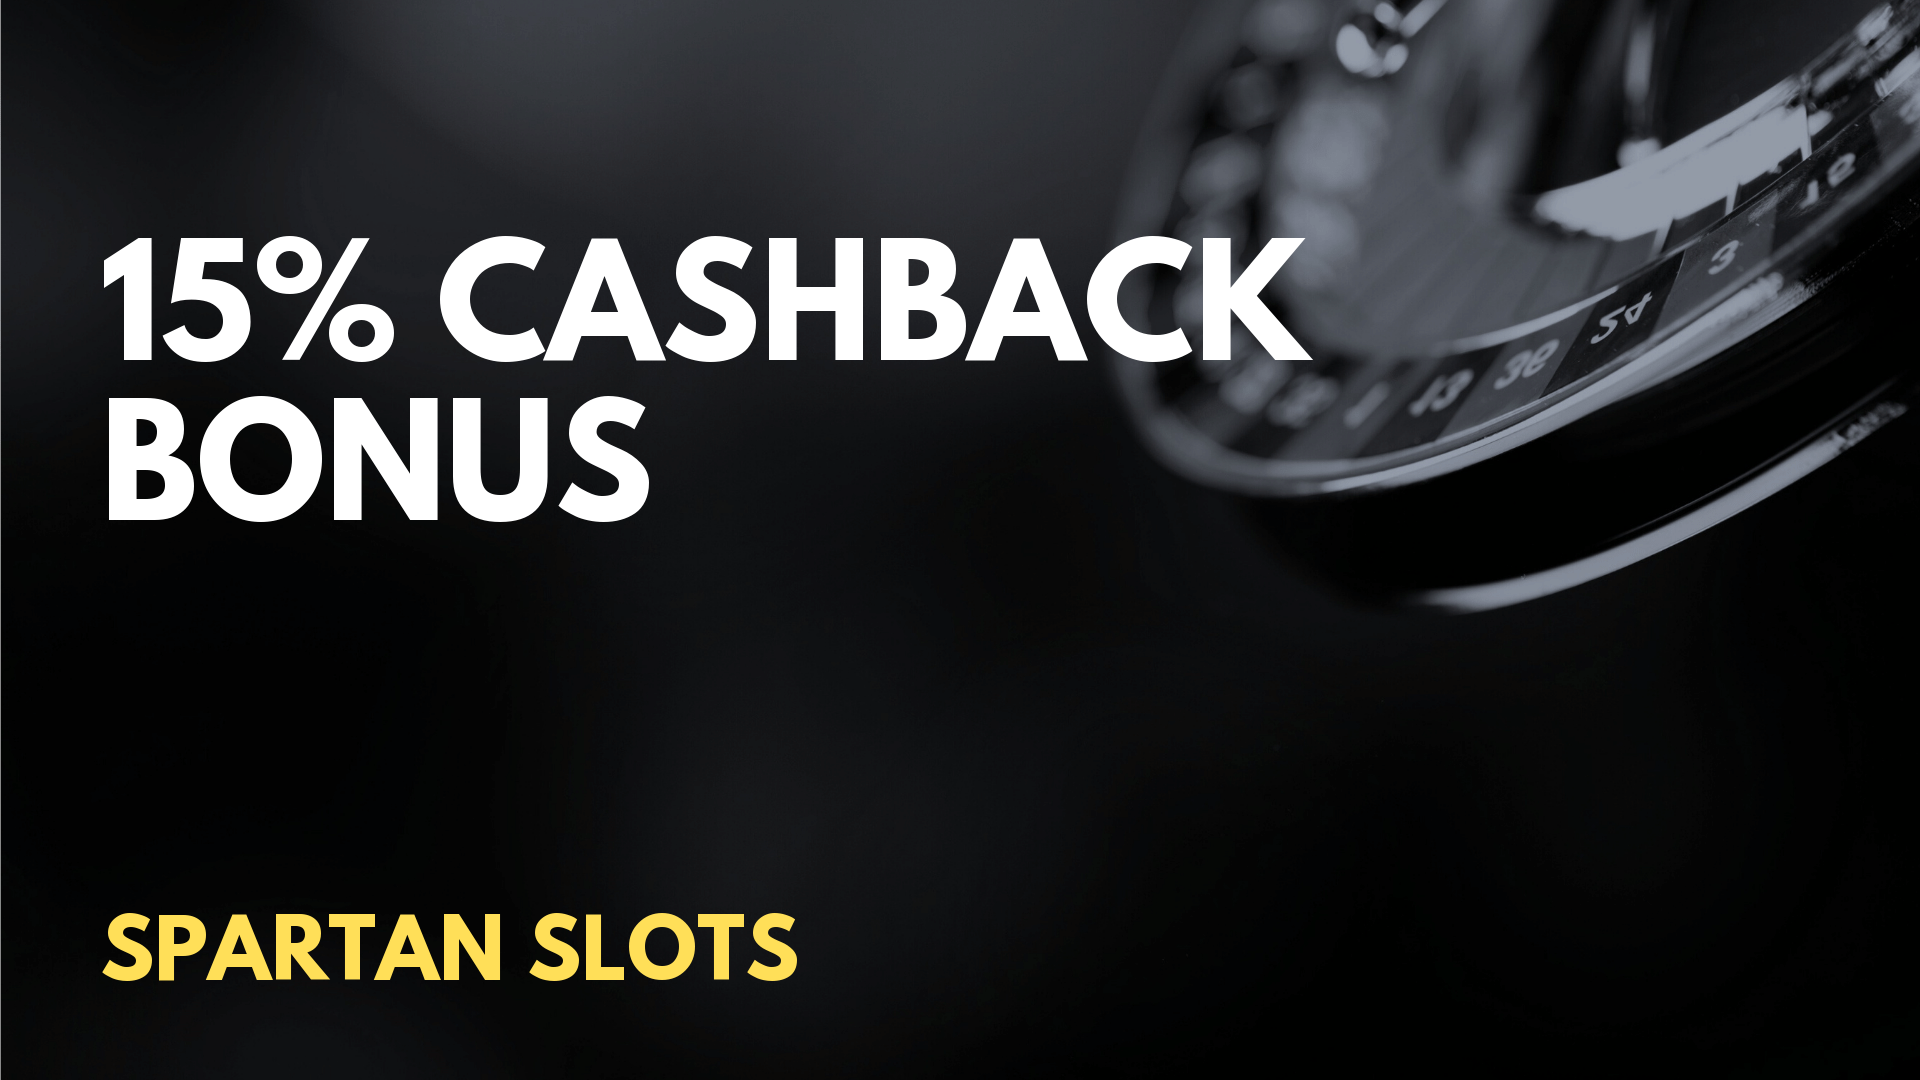 ⭐ Spartan Slots 15% Cashback Cashback Bonus